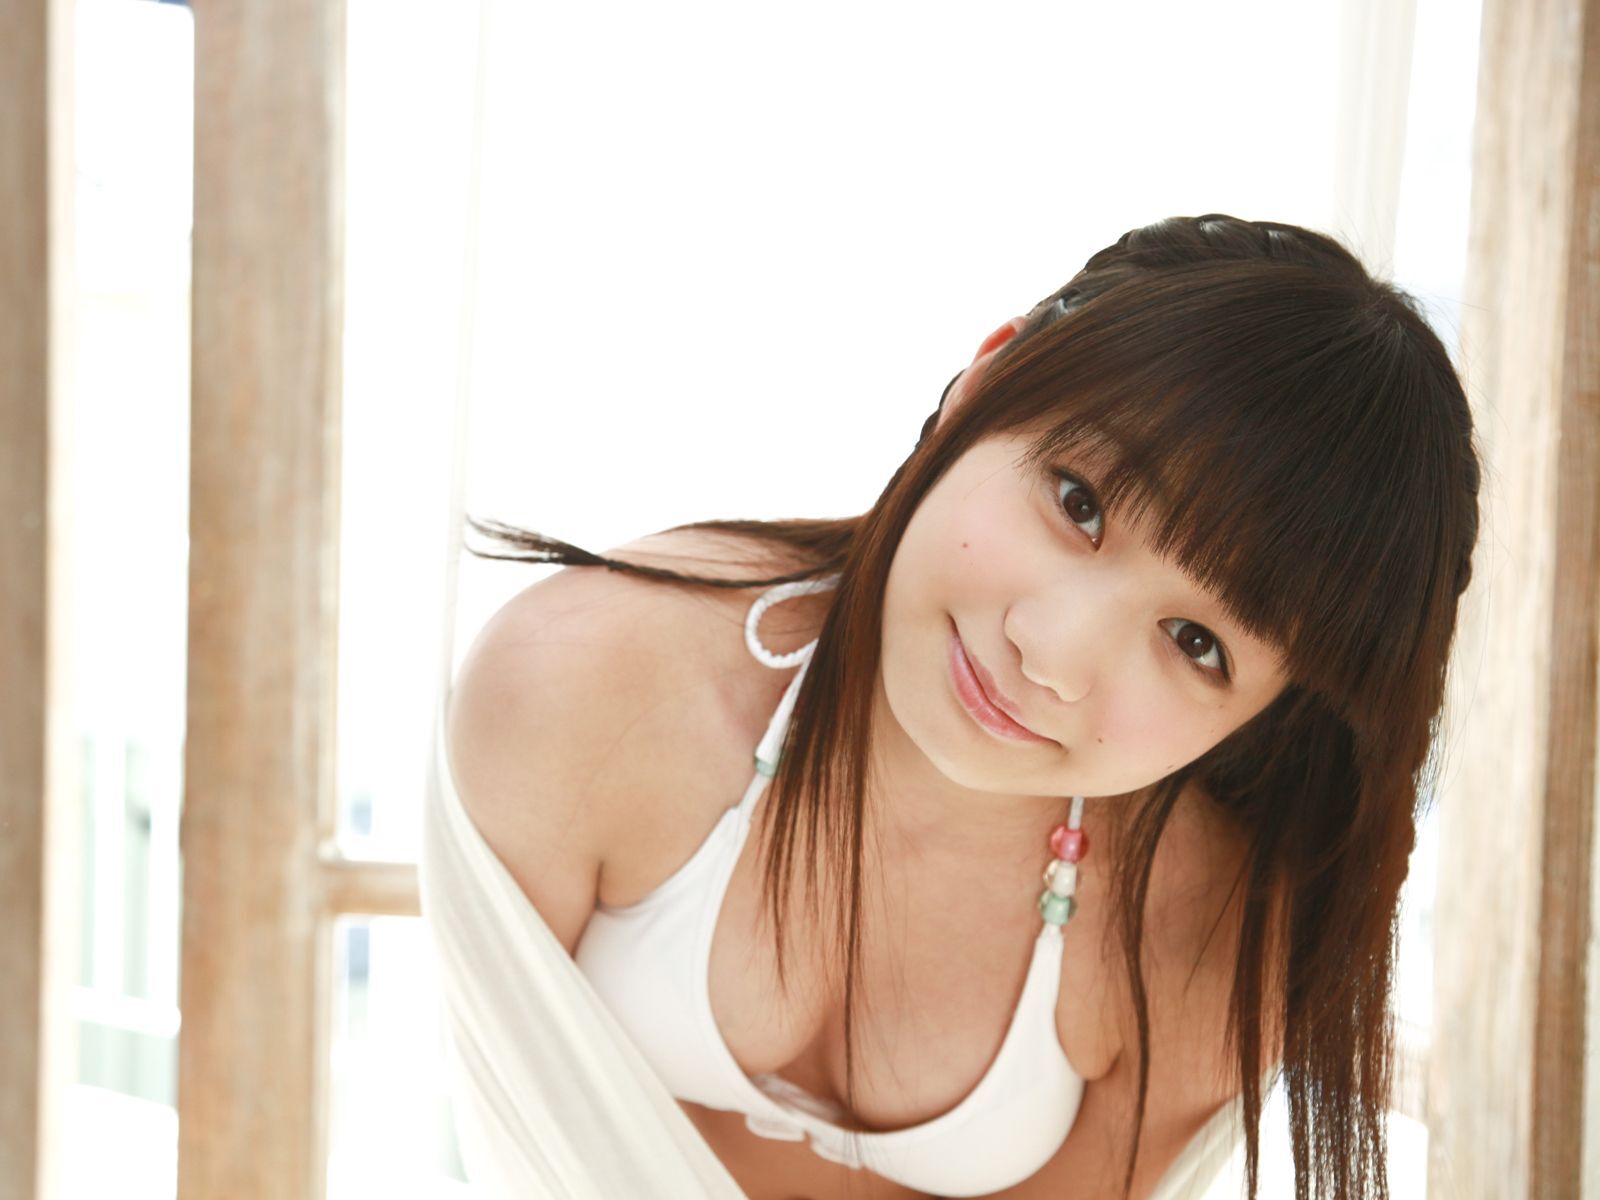 Japanese beauty Masako ITO[ Sabra.net ] StriCtlyGirls